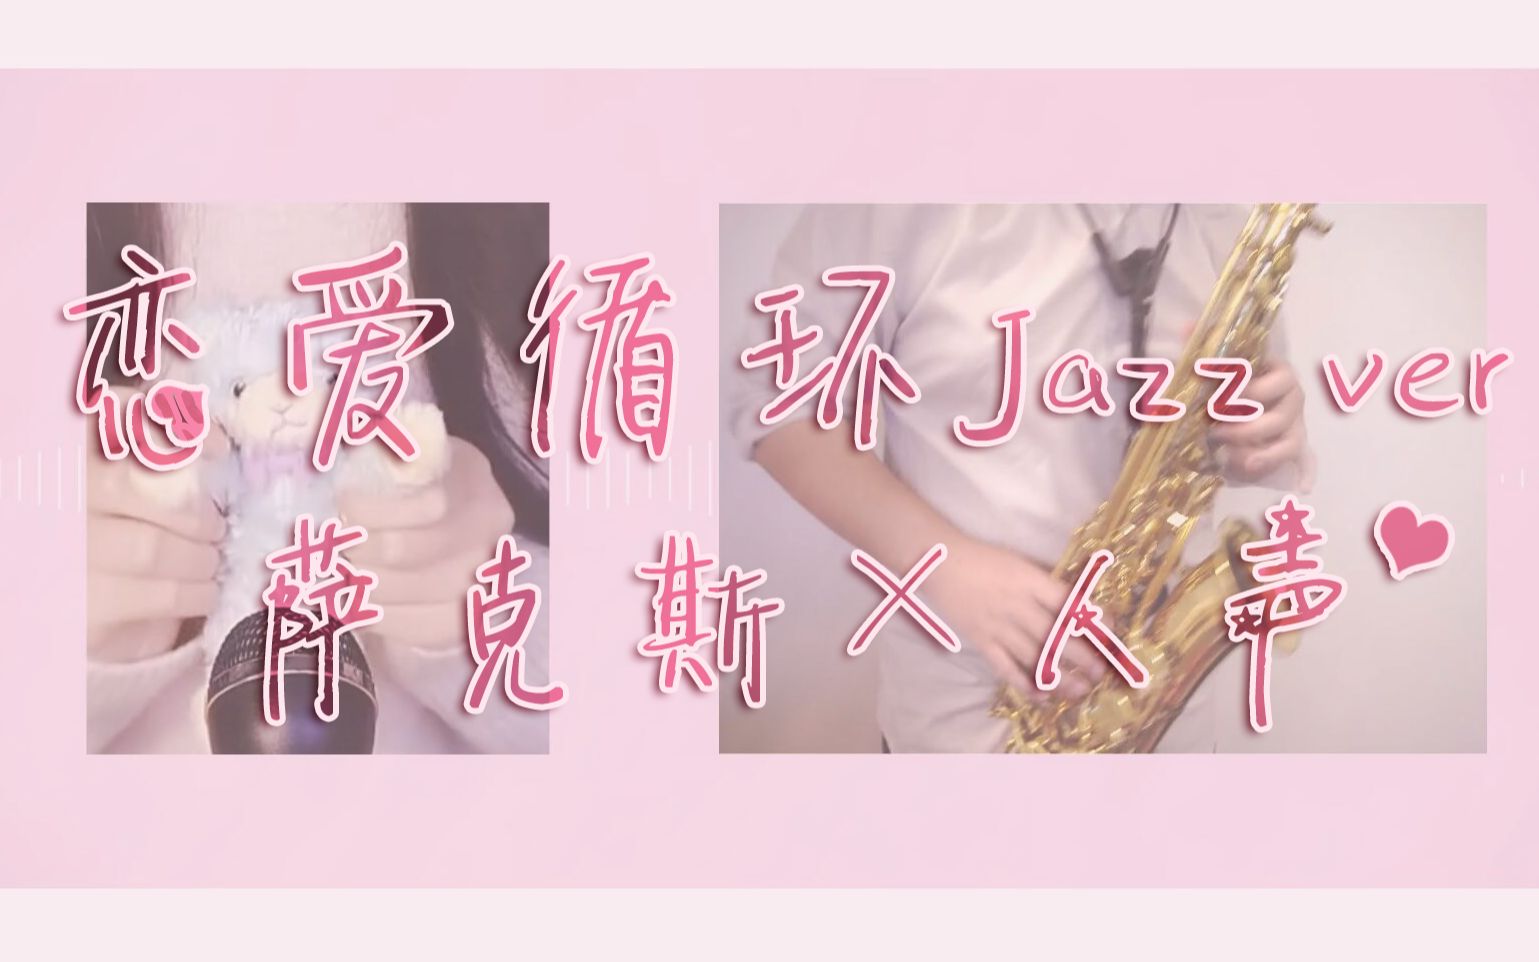 【萨克斯x人声】恋爱循环Jazz cover (Ft: Sugar)